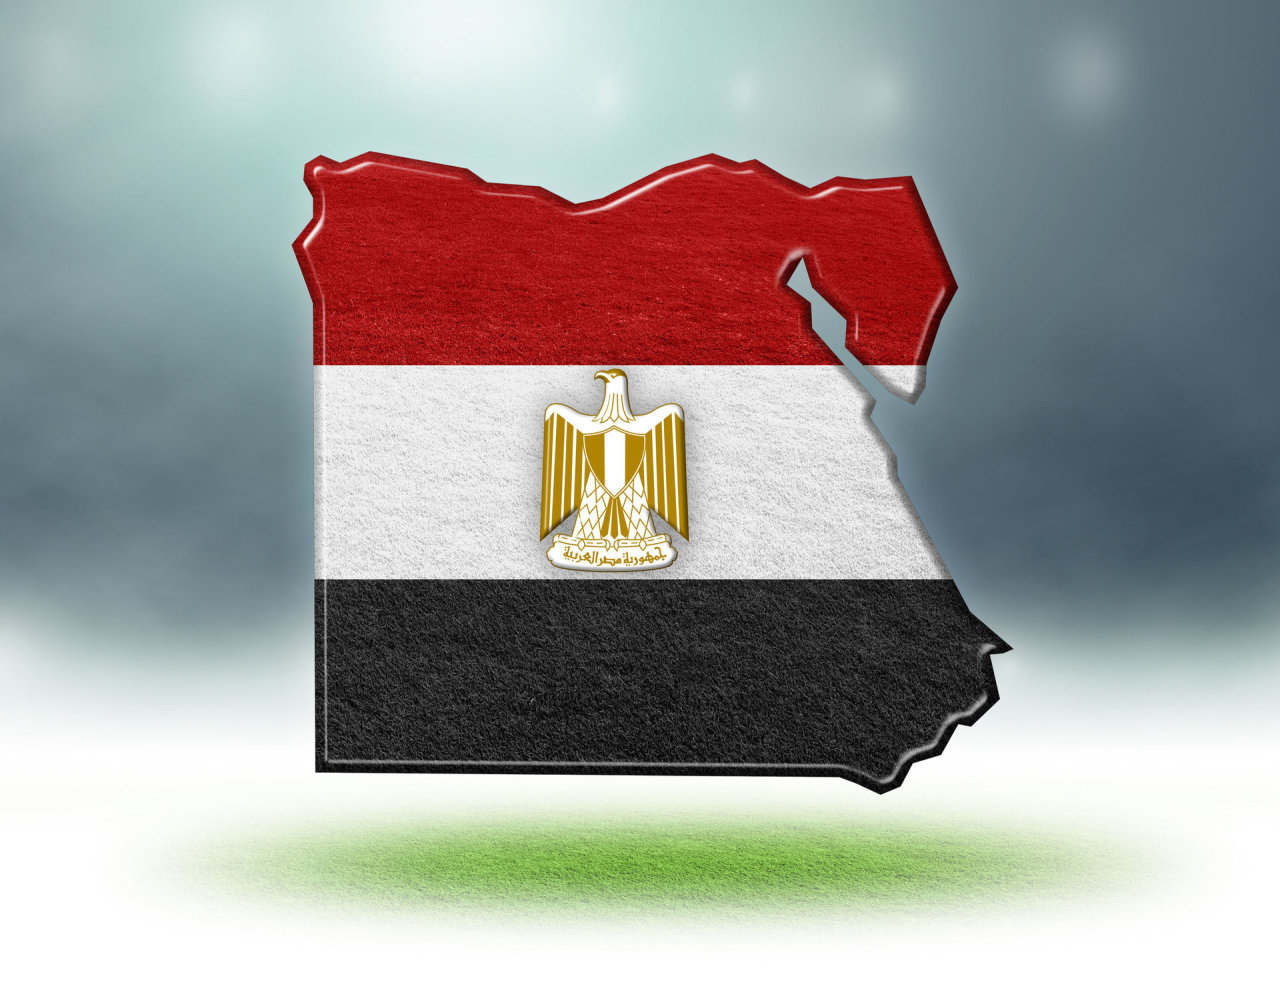 Egipte sunkvežimiui įkritus į Nilą žuvo du žmonės, aštuoni laikomi dingusiais